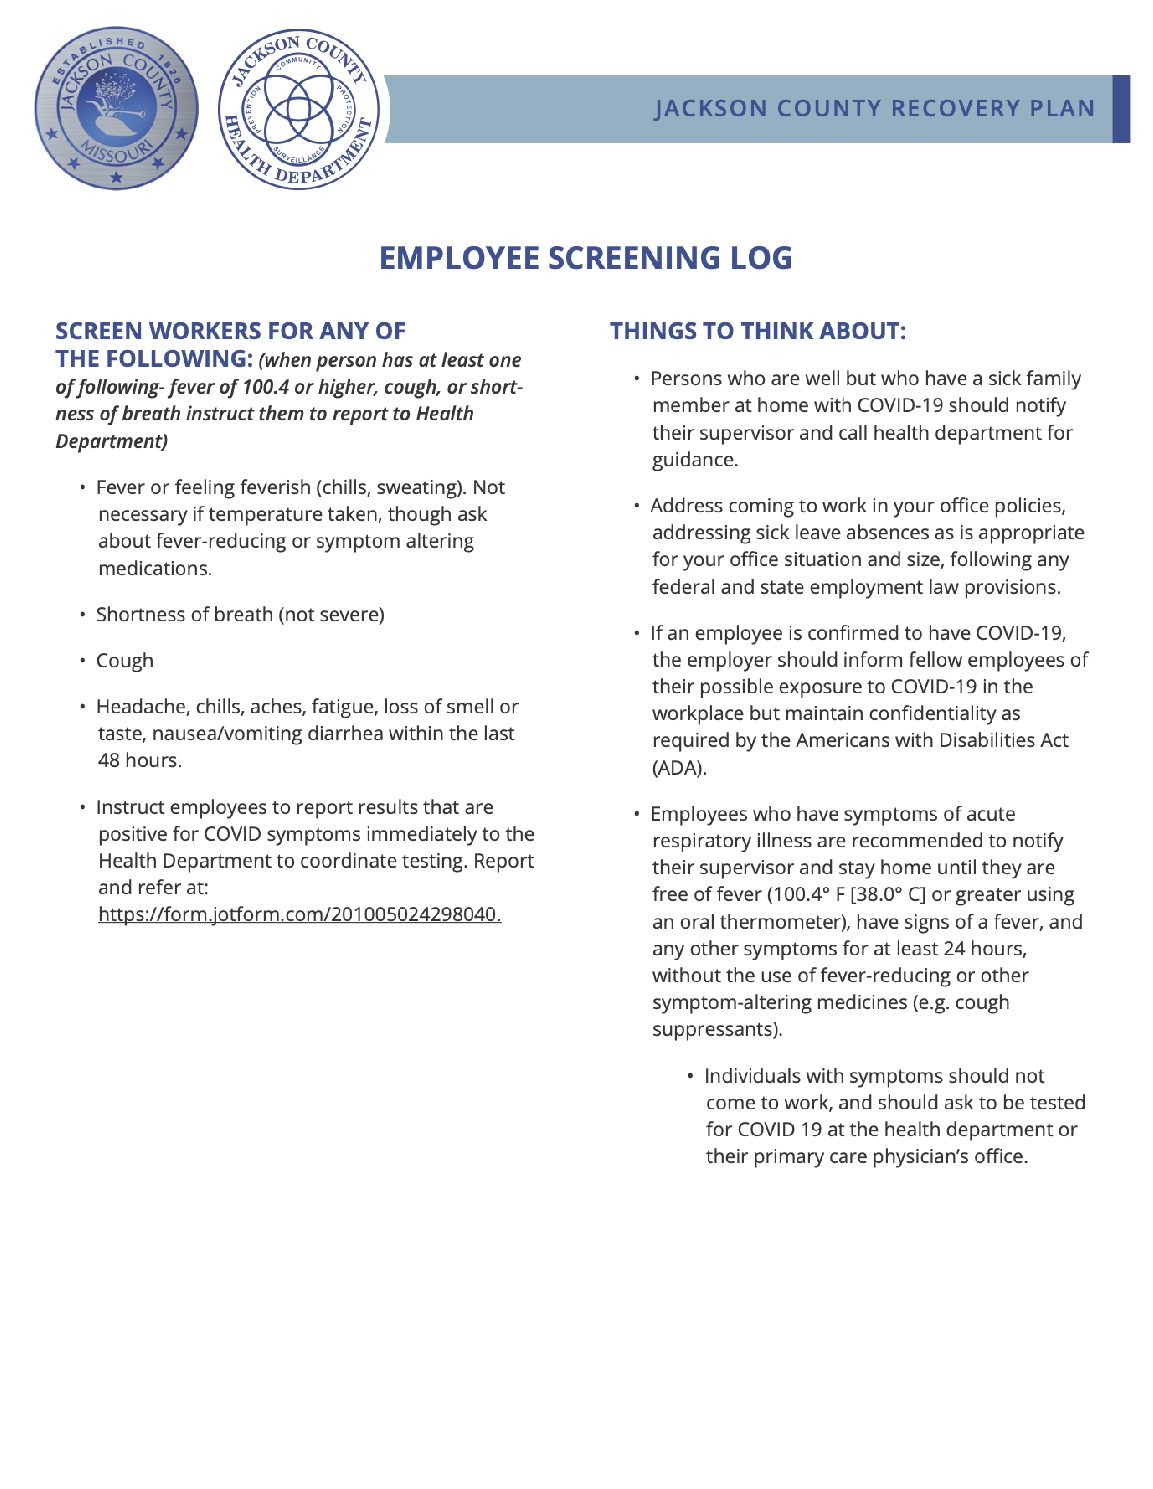 Employee Screening Log